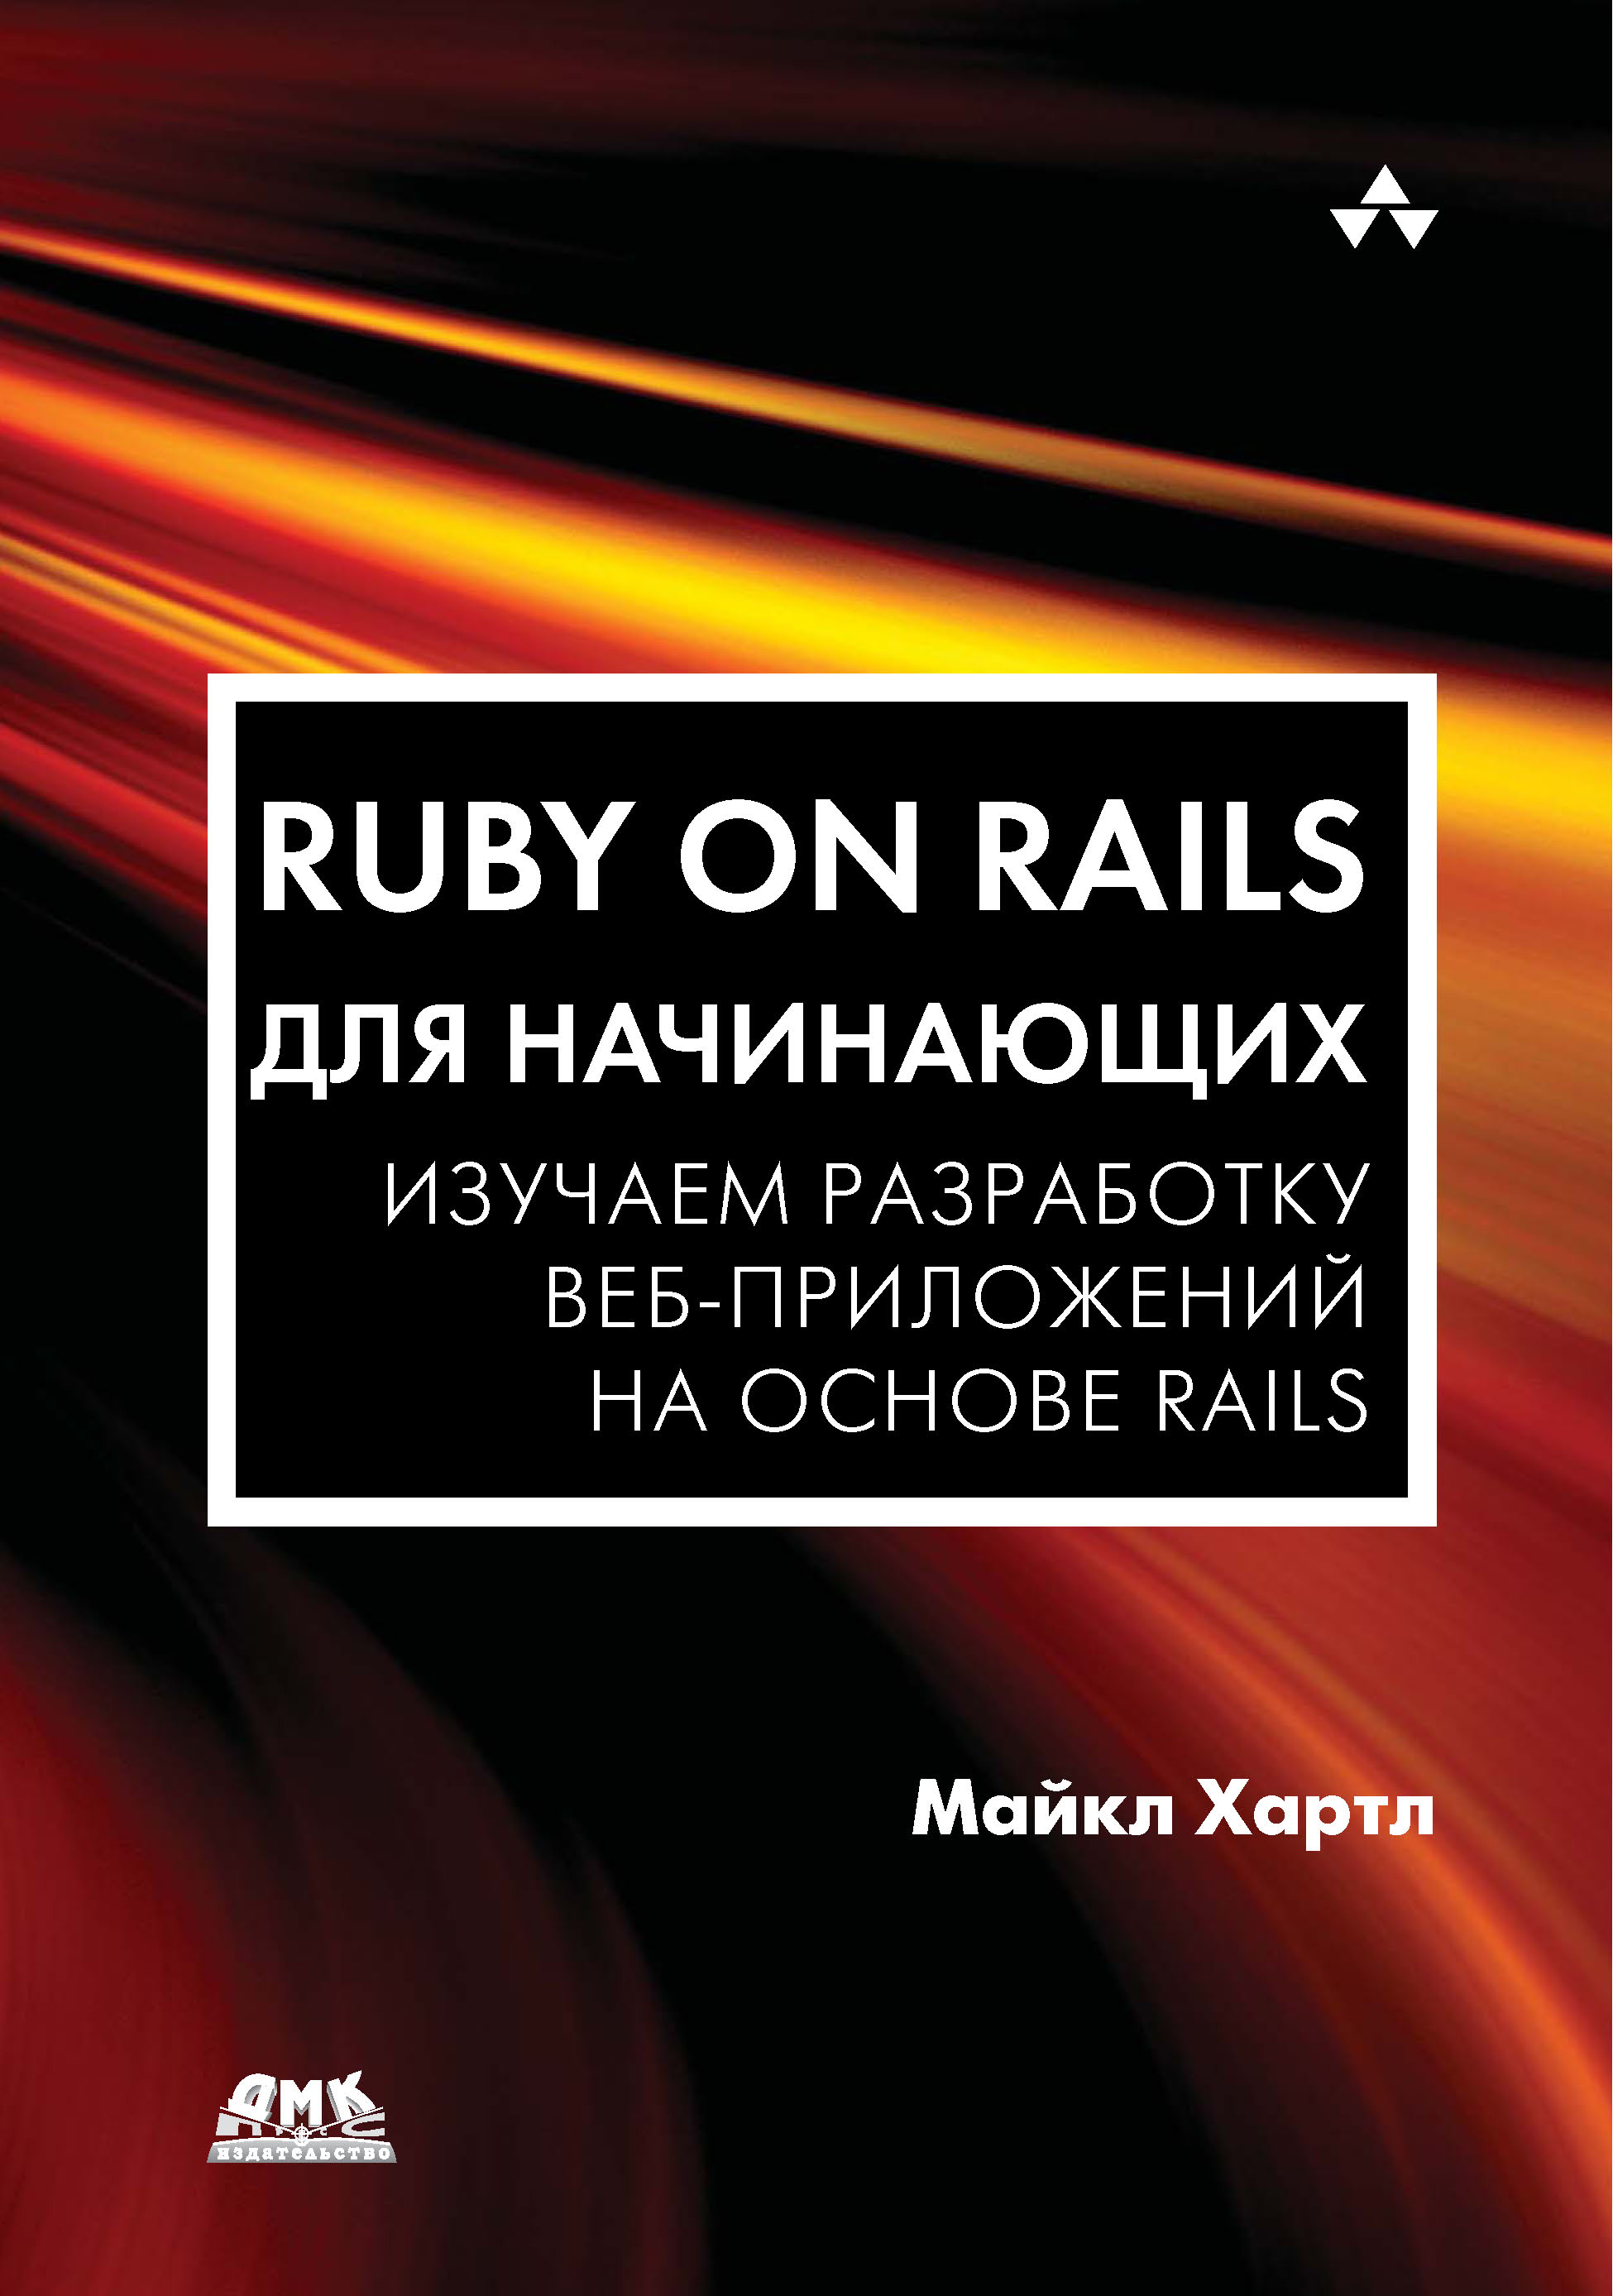 Книга  Ruby on Rails для начинающих. Изучаем разработку веб-приложений на основе Rails созданная Майкл Хартл, А. П. Разуваев может относится к жанру зарубежная компьютерная литература, интернет, программирование. Стоимость электронной книги Ruby on Rails для начинающих. Изучаем разработку веб-приложений на основе Rails с идентификатором 22805990 составляет 799.00 руб.